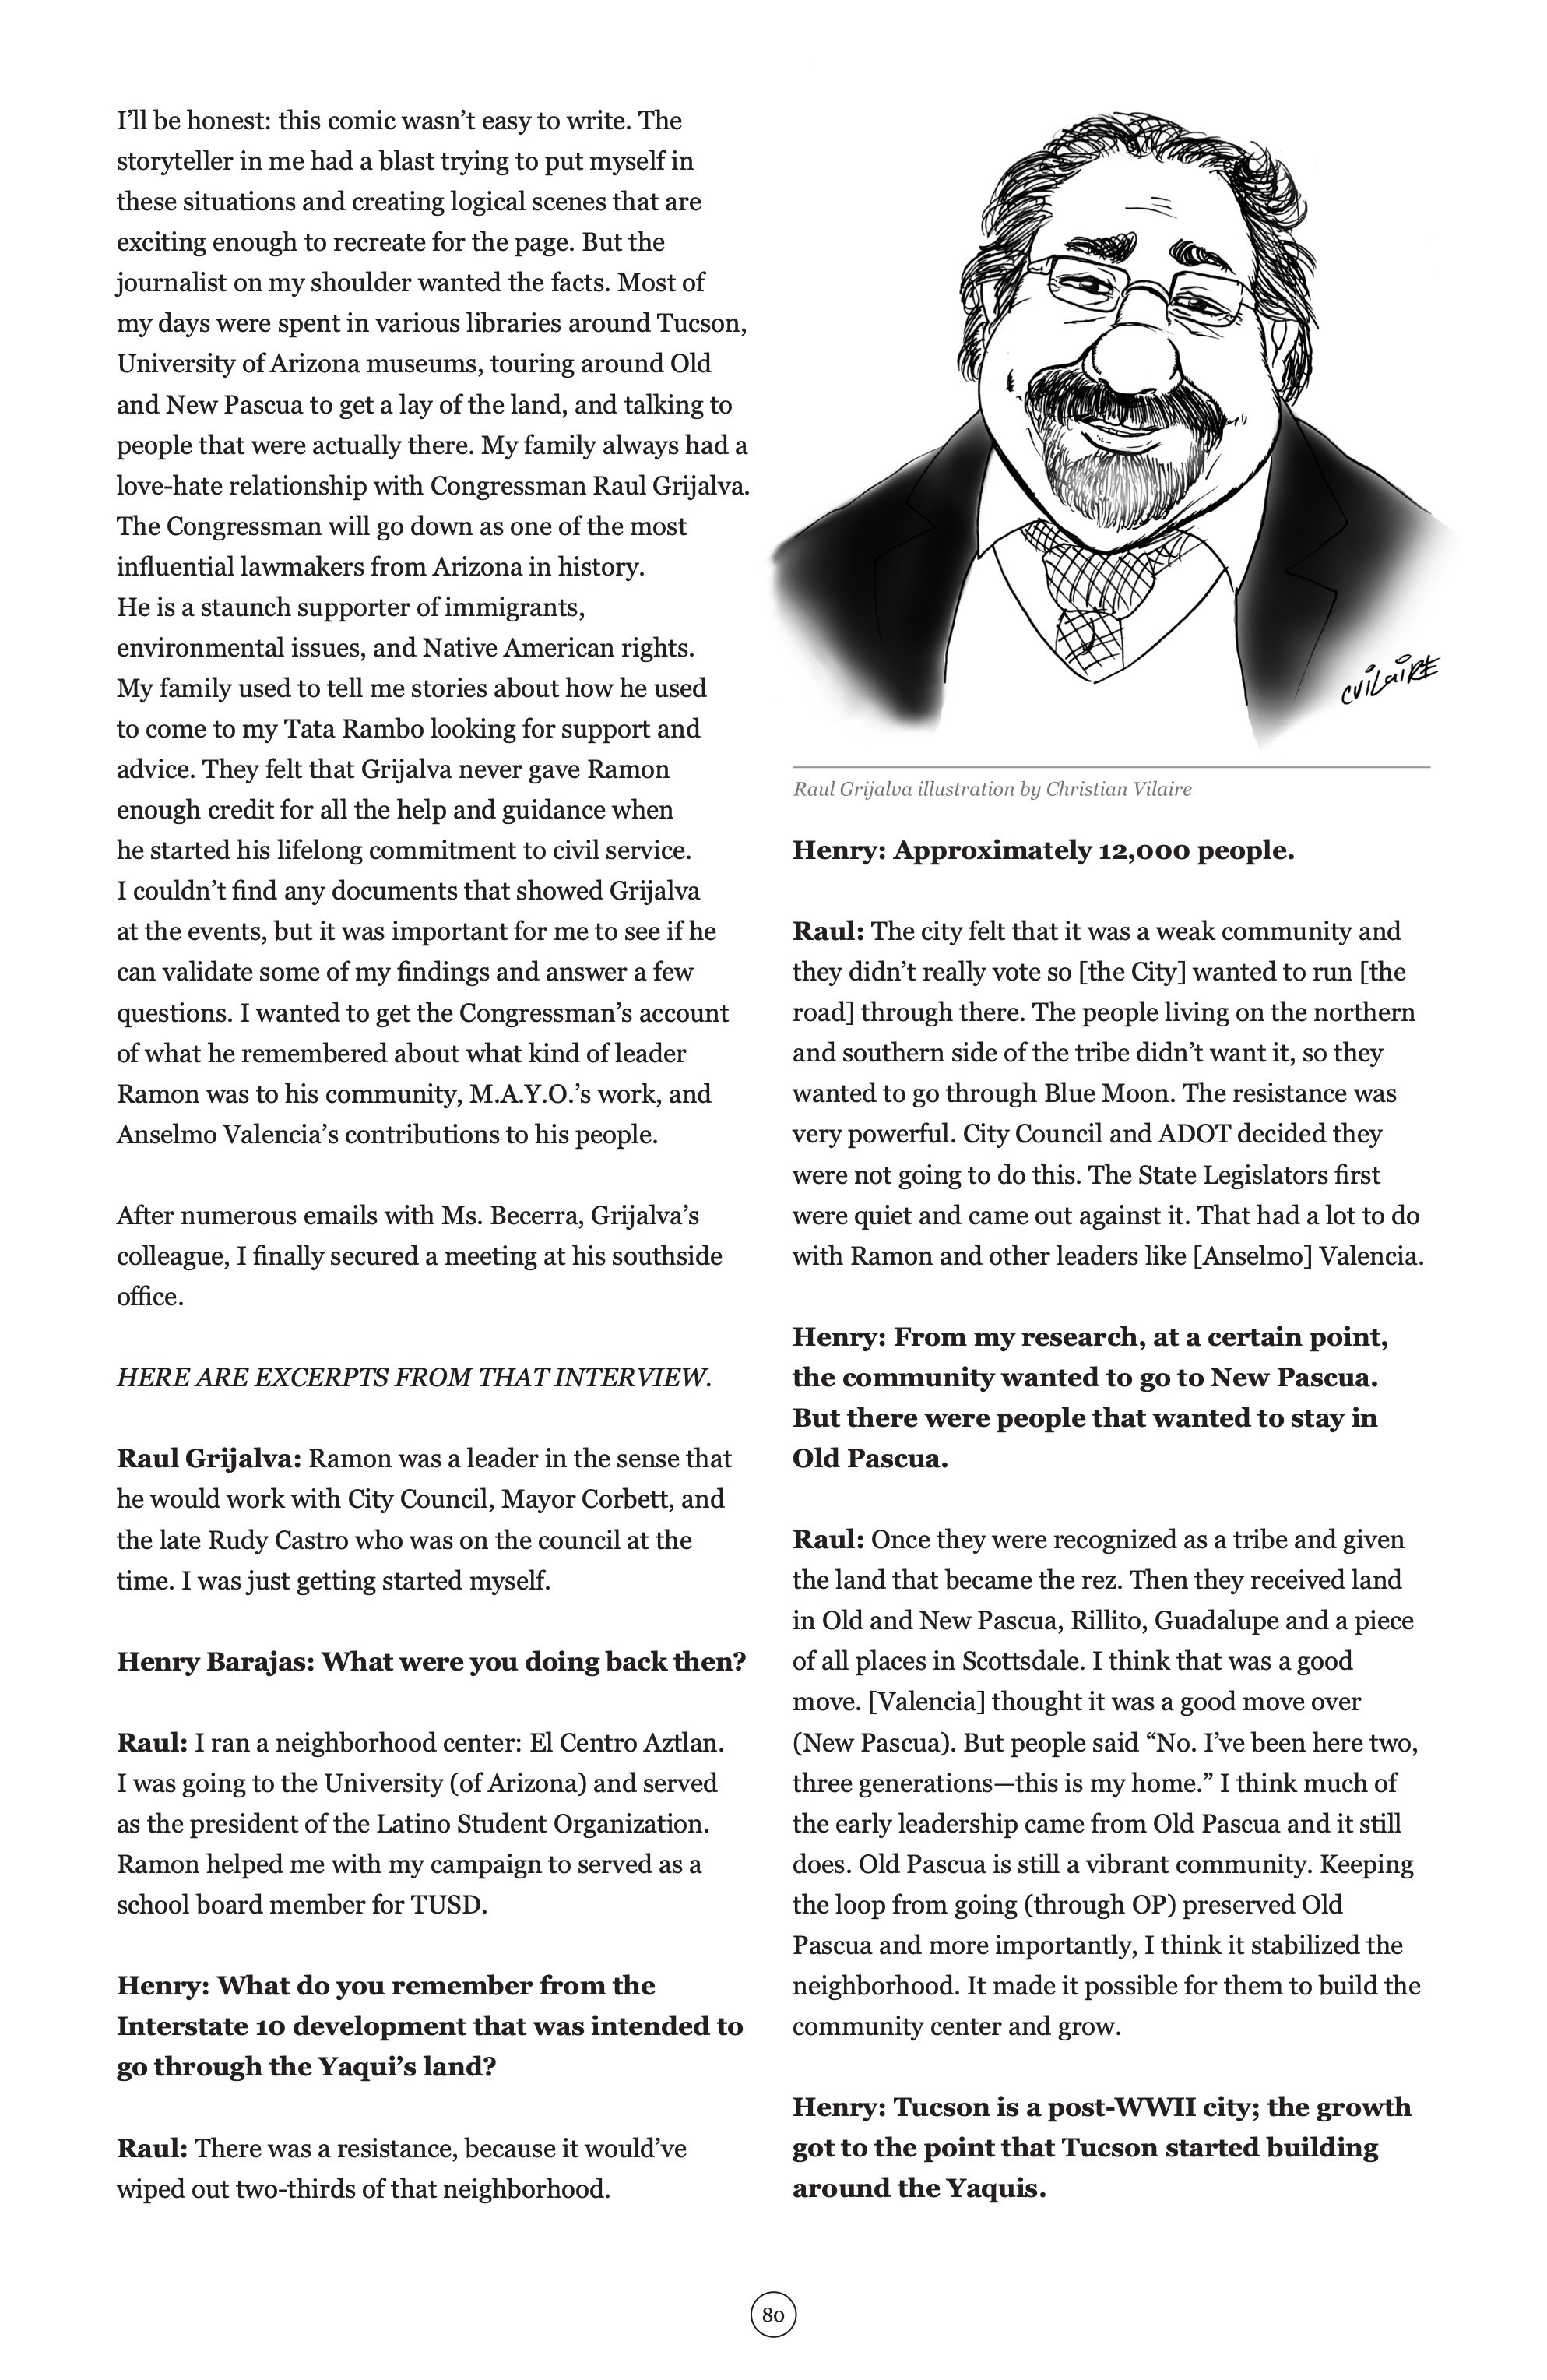 Read online La Voz De M.A.Y.O.: Tata Rambo comic -  Issue # TPB 1 - 87